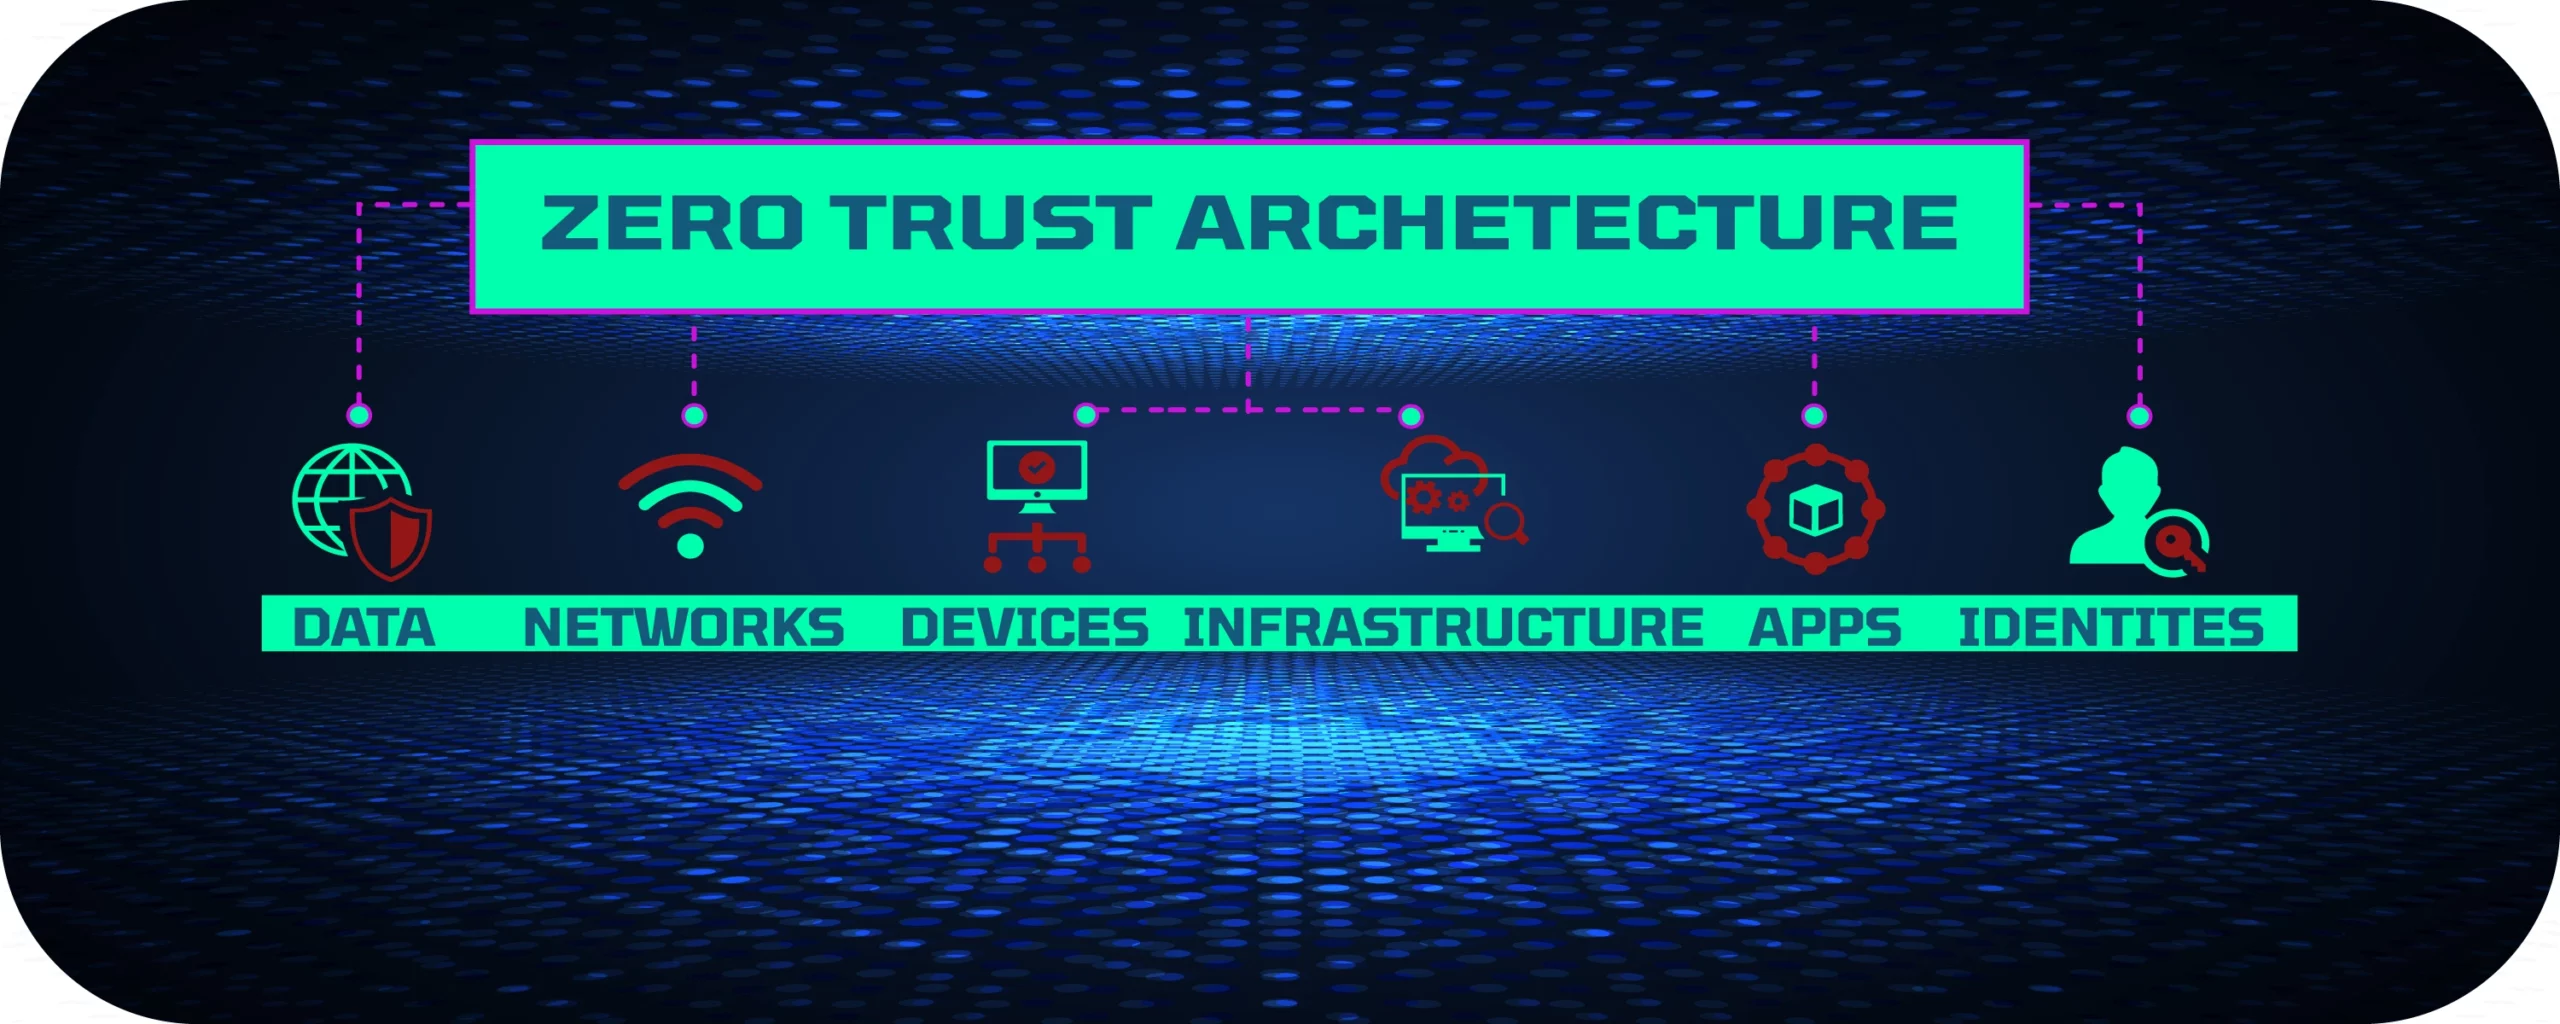 Zero Trust Architecture Security Diagram